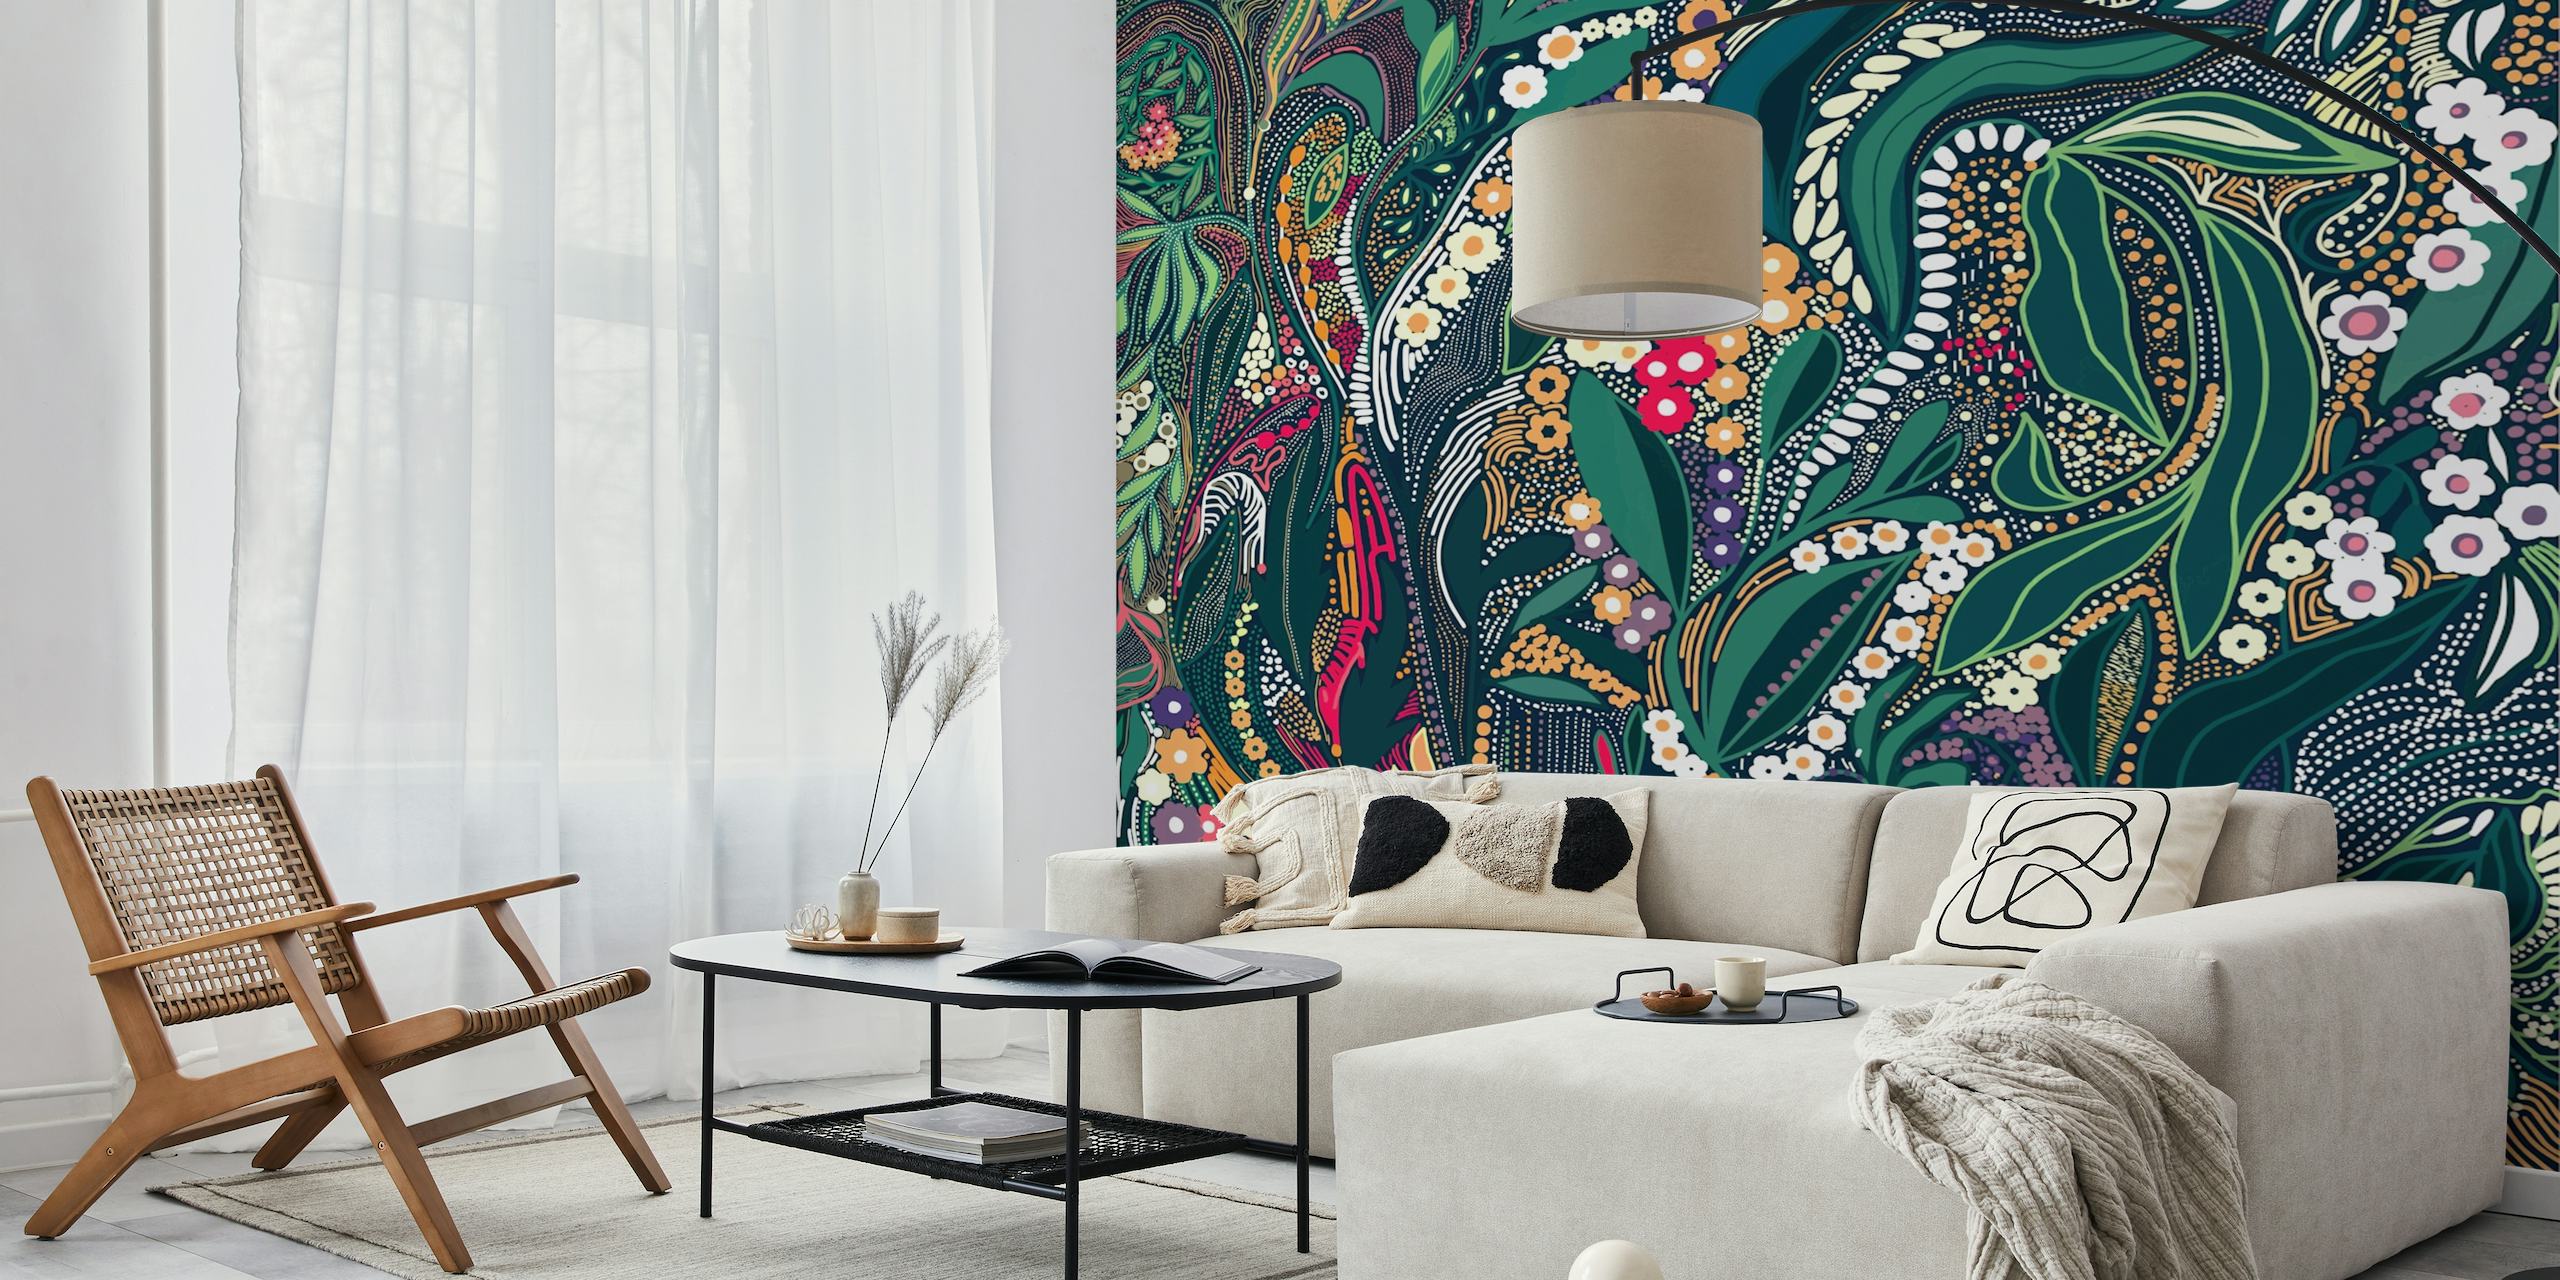 Seinämaalaus, jossa on monimutkainen suunnittelu lehtiä, kukkia ja kuvioita rehevissä väreissä.